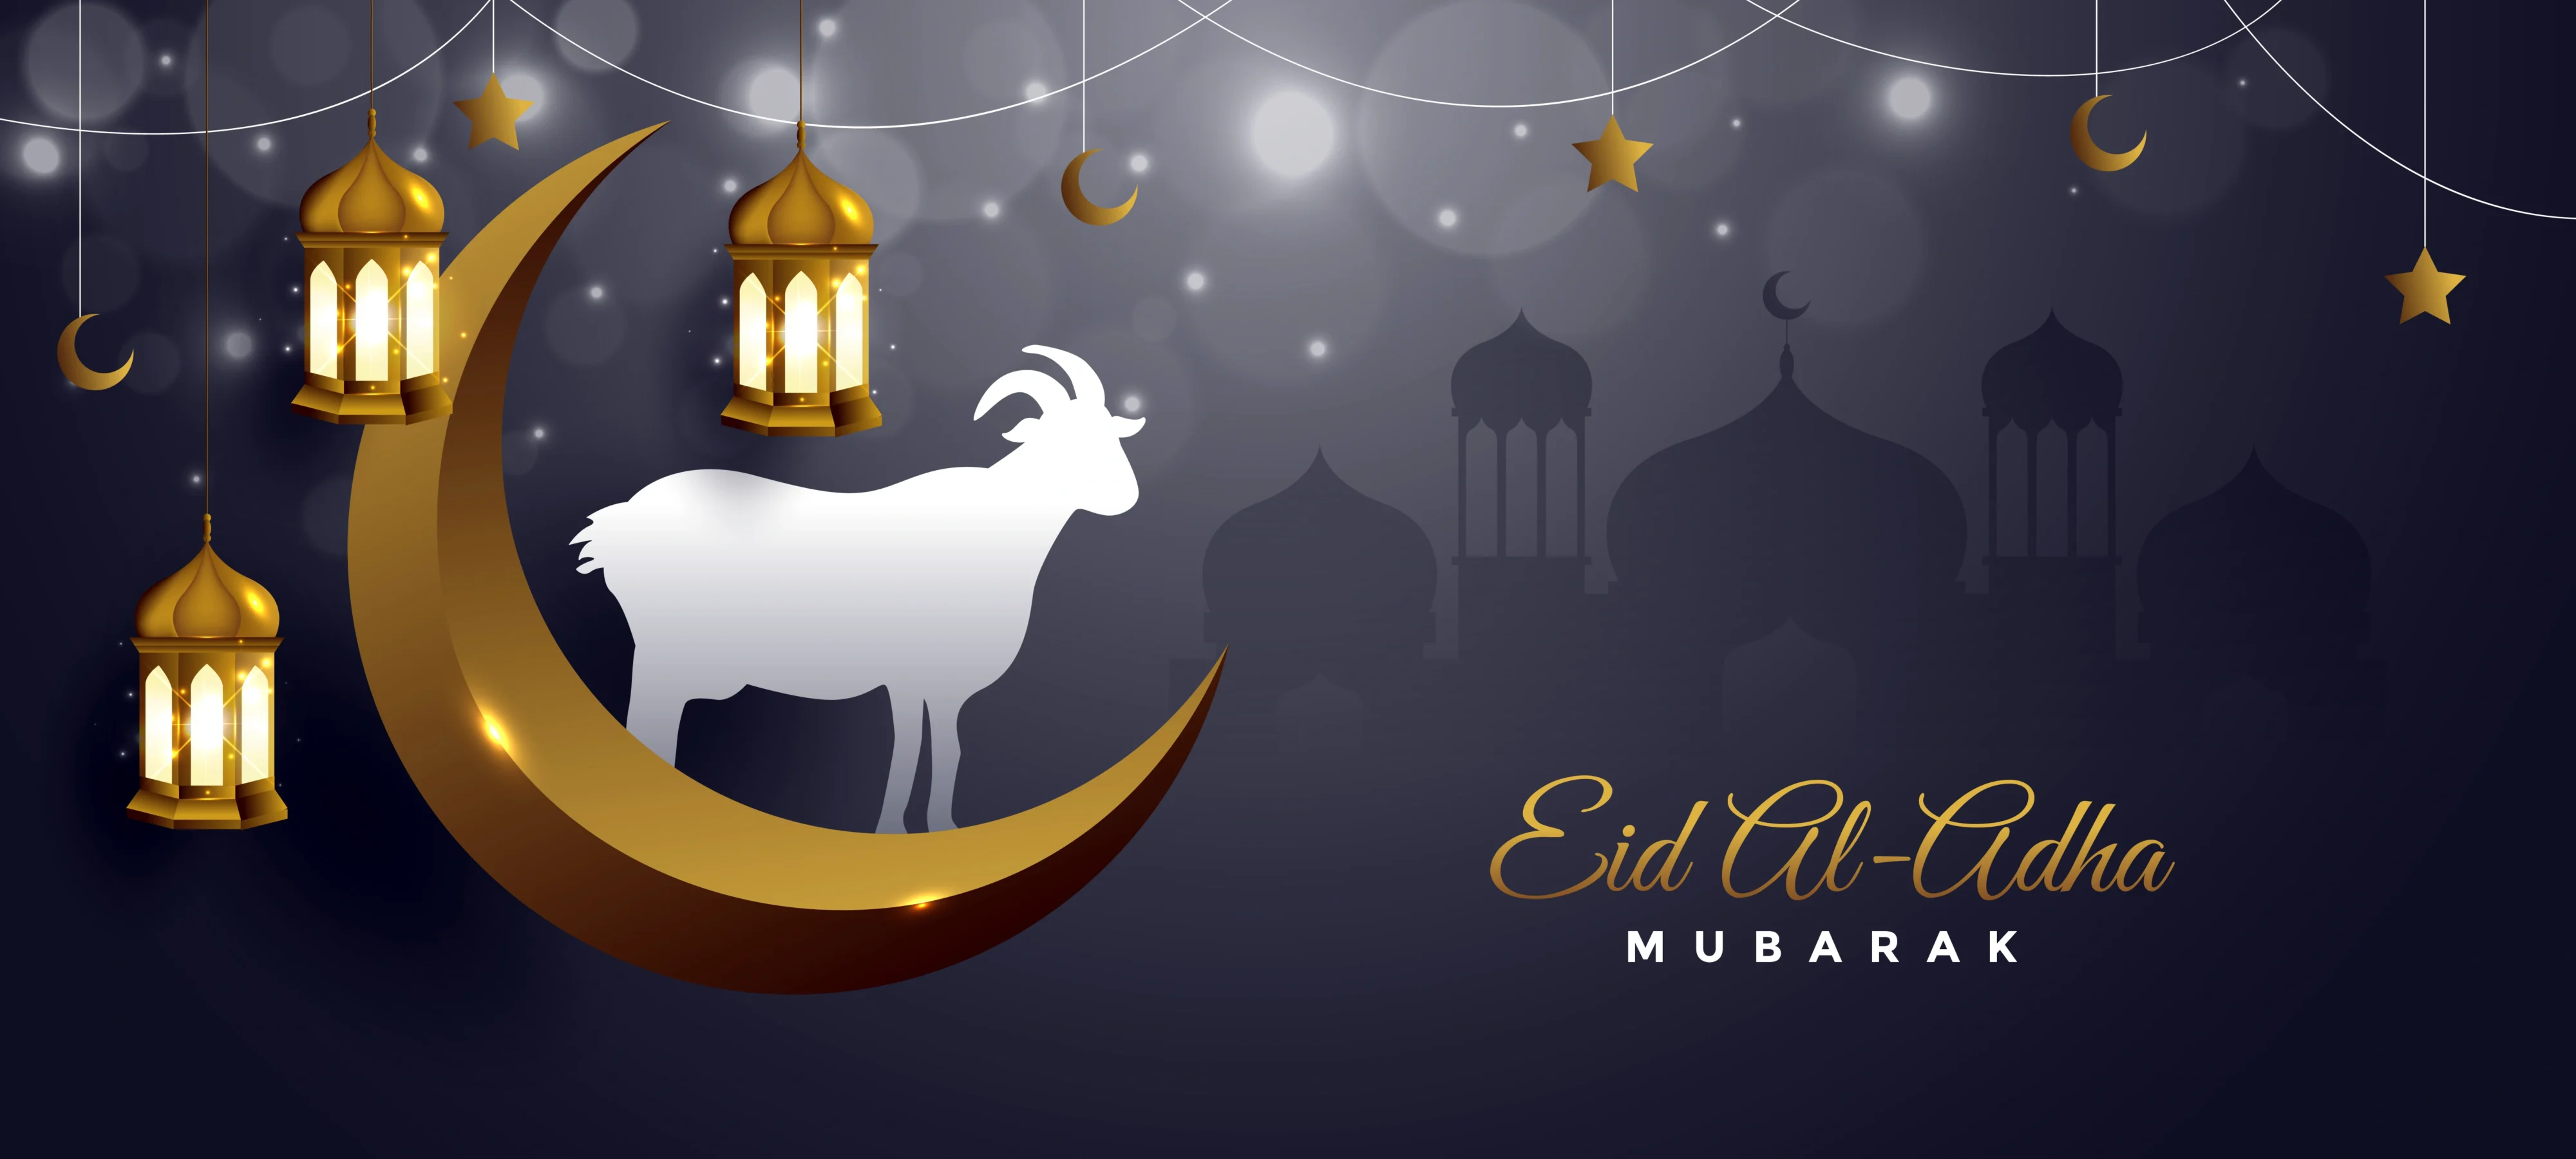 Eid ul adha Mubarak 4k Ultra HD Wallpaper